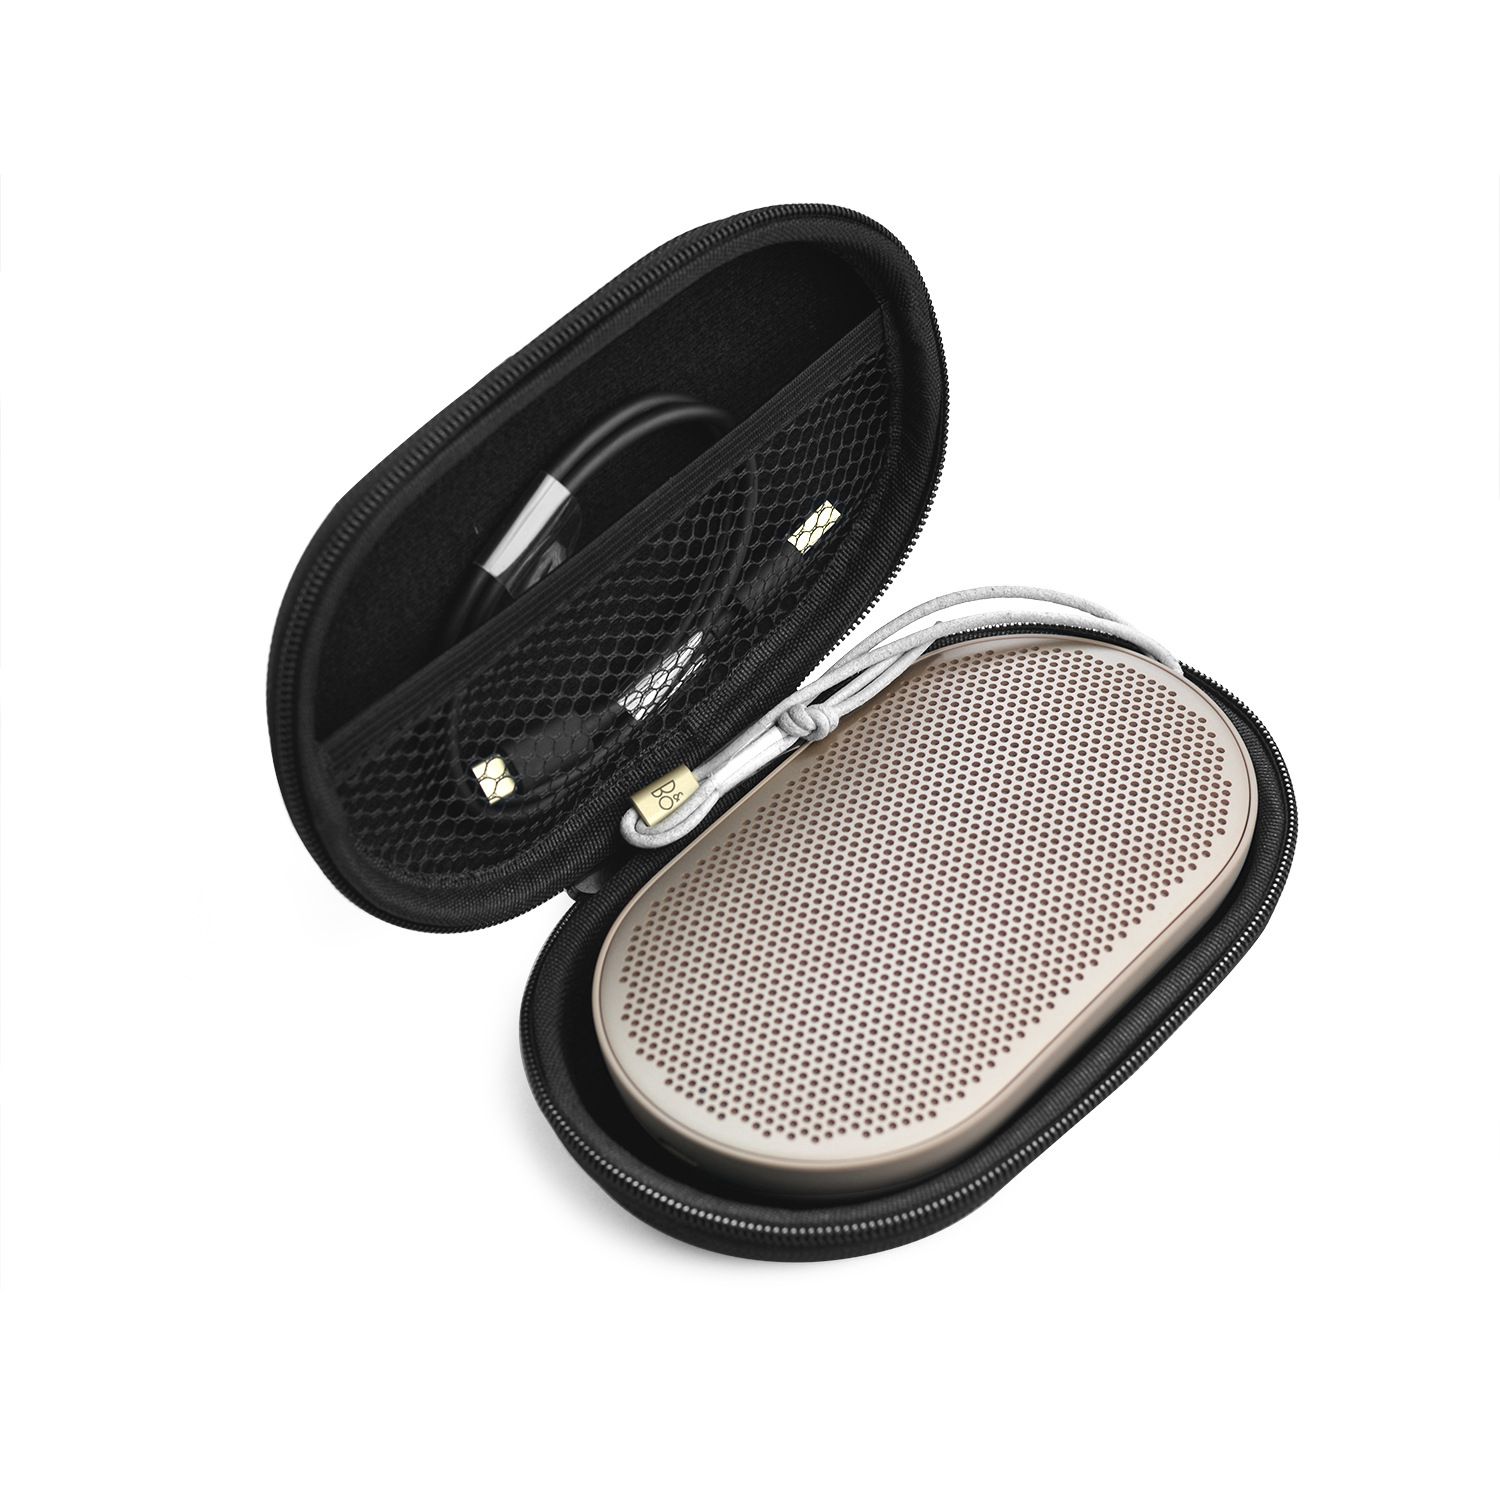 LGFM-Voor Carry Beschermende Speaker Box Pouch Cover Bag Case Voor Bang & Olufsen Beoplay P2 Bluetooth Speaker. fit voor Snoeren